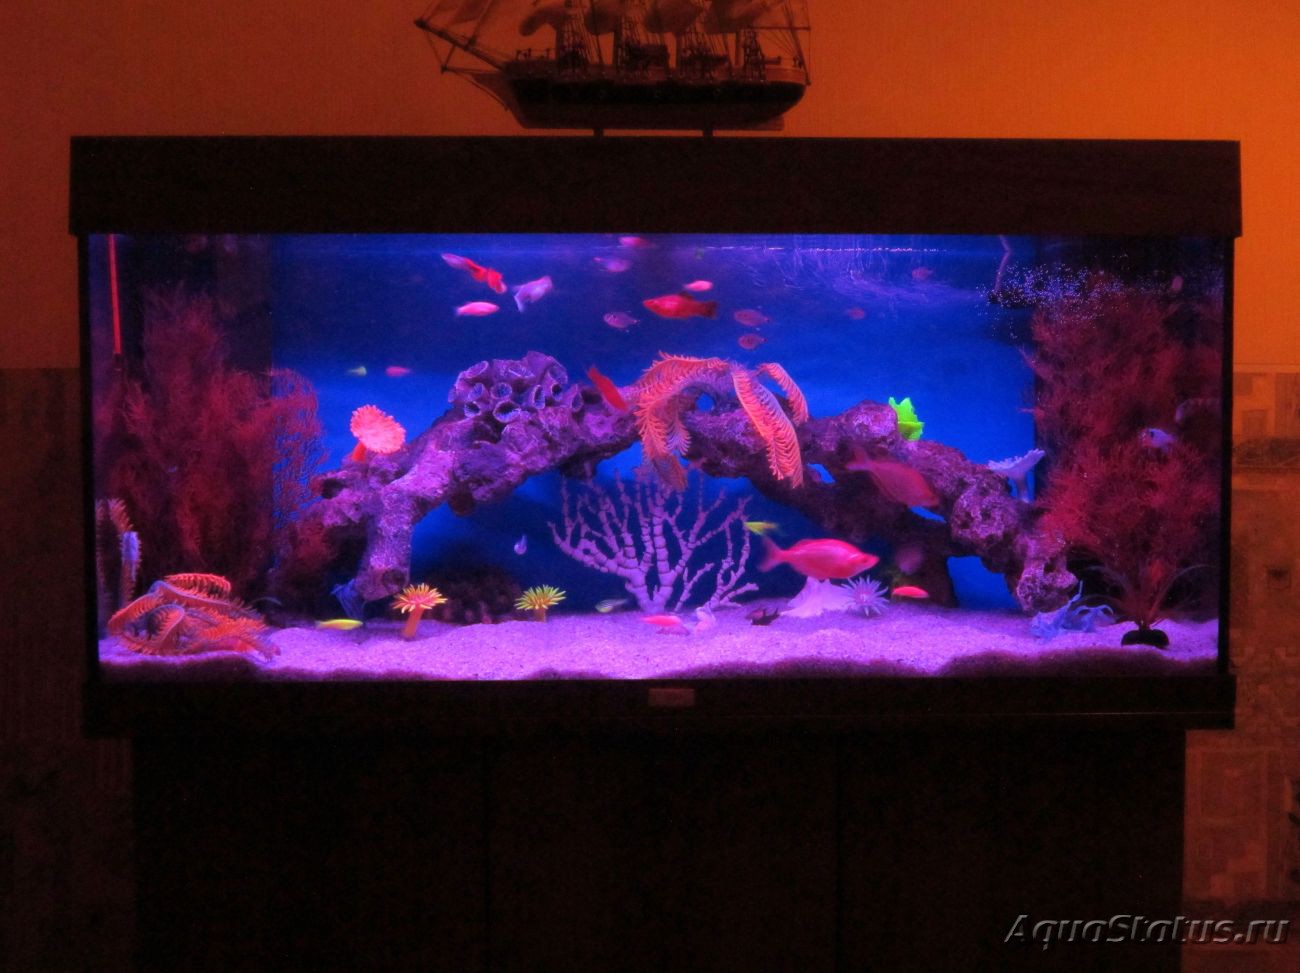 Как правильно освещать аквариум? - AQUAMED